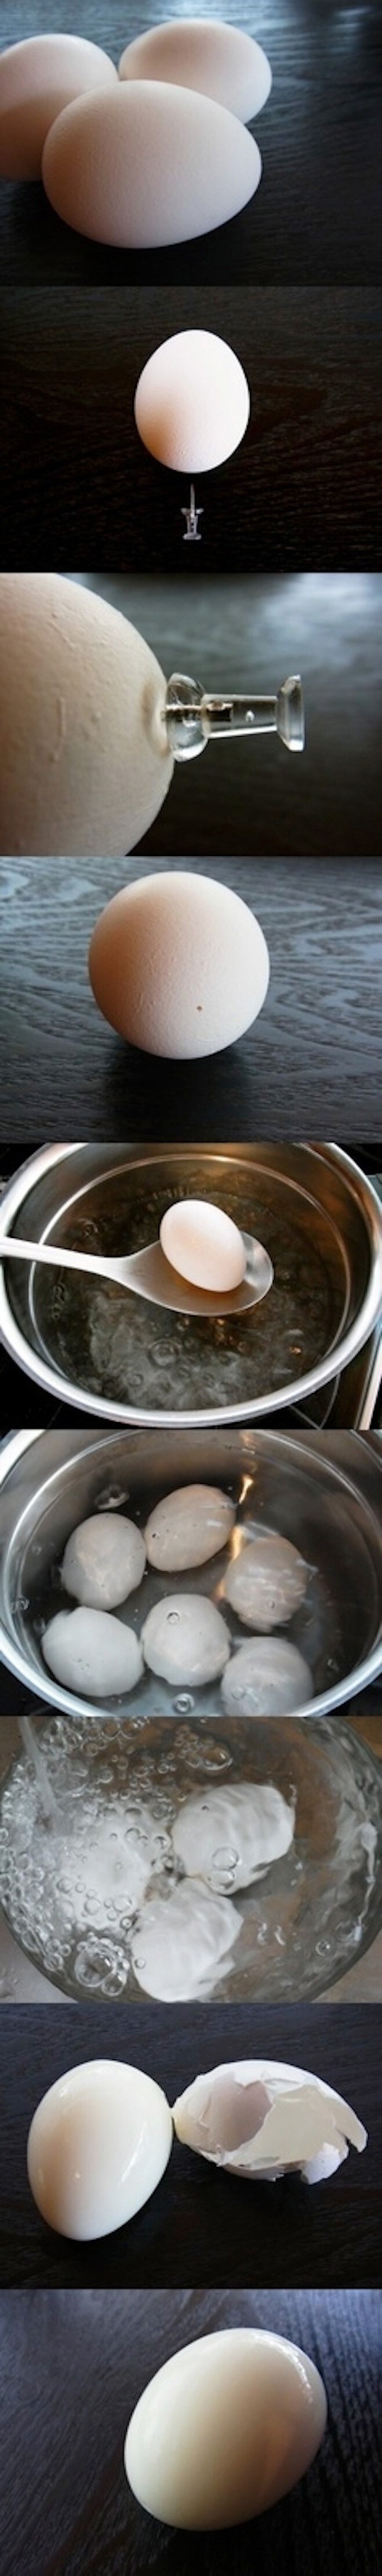 Используй канцелярскую кнопку, чтобы вареное яйцо было проще чистить